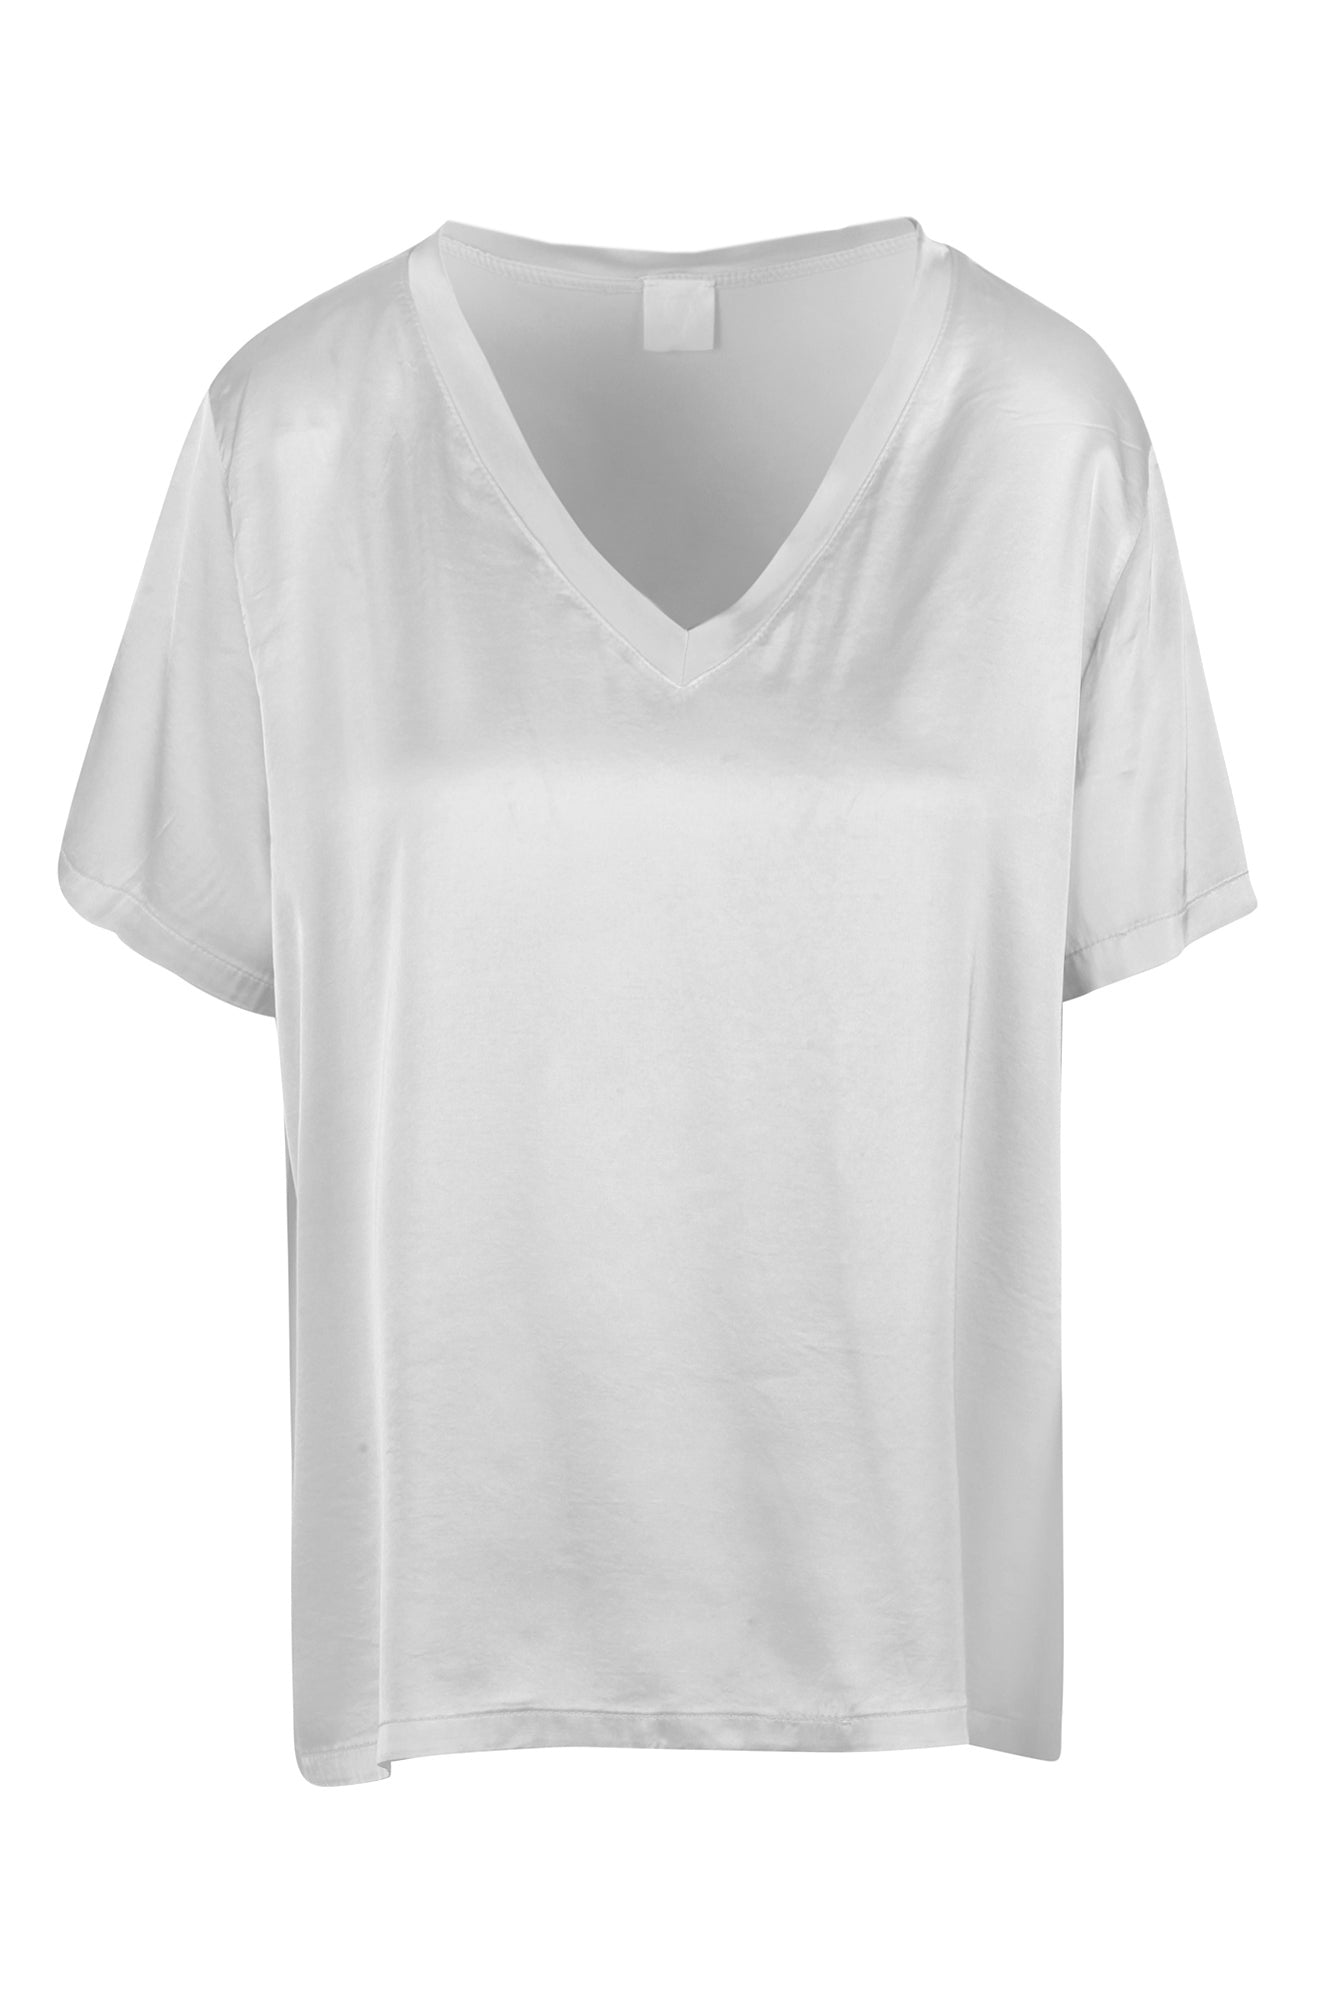 La Femme Blanche - T-shirt - 431589 - Bianco